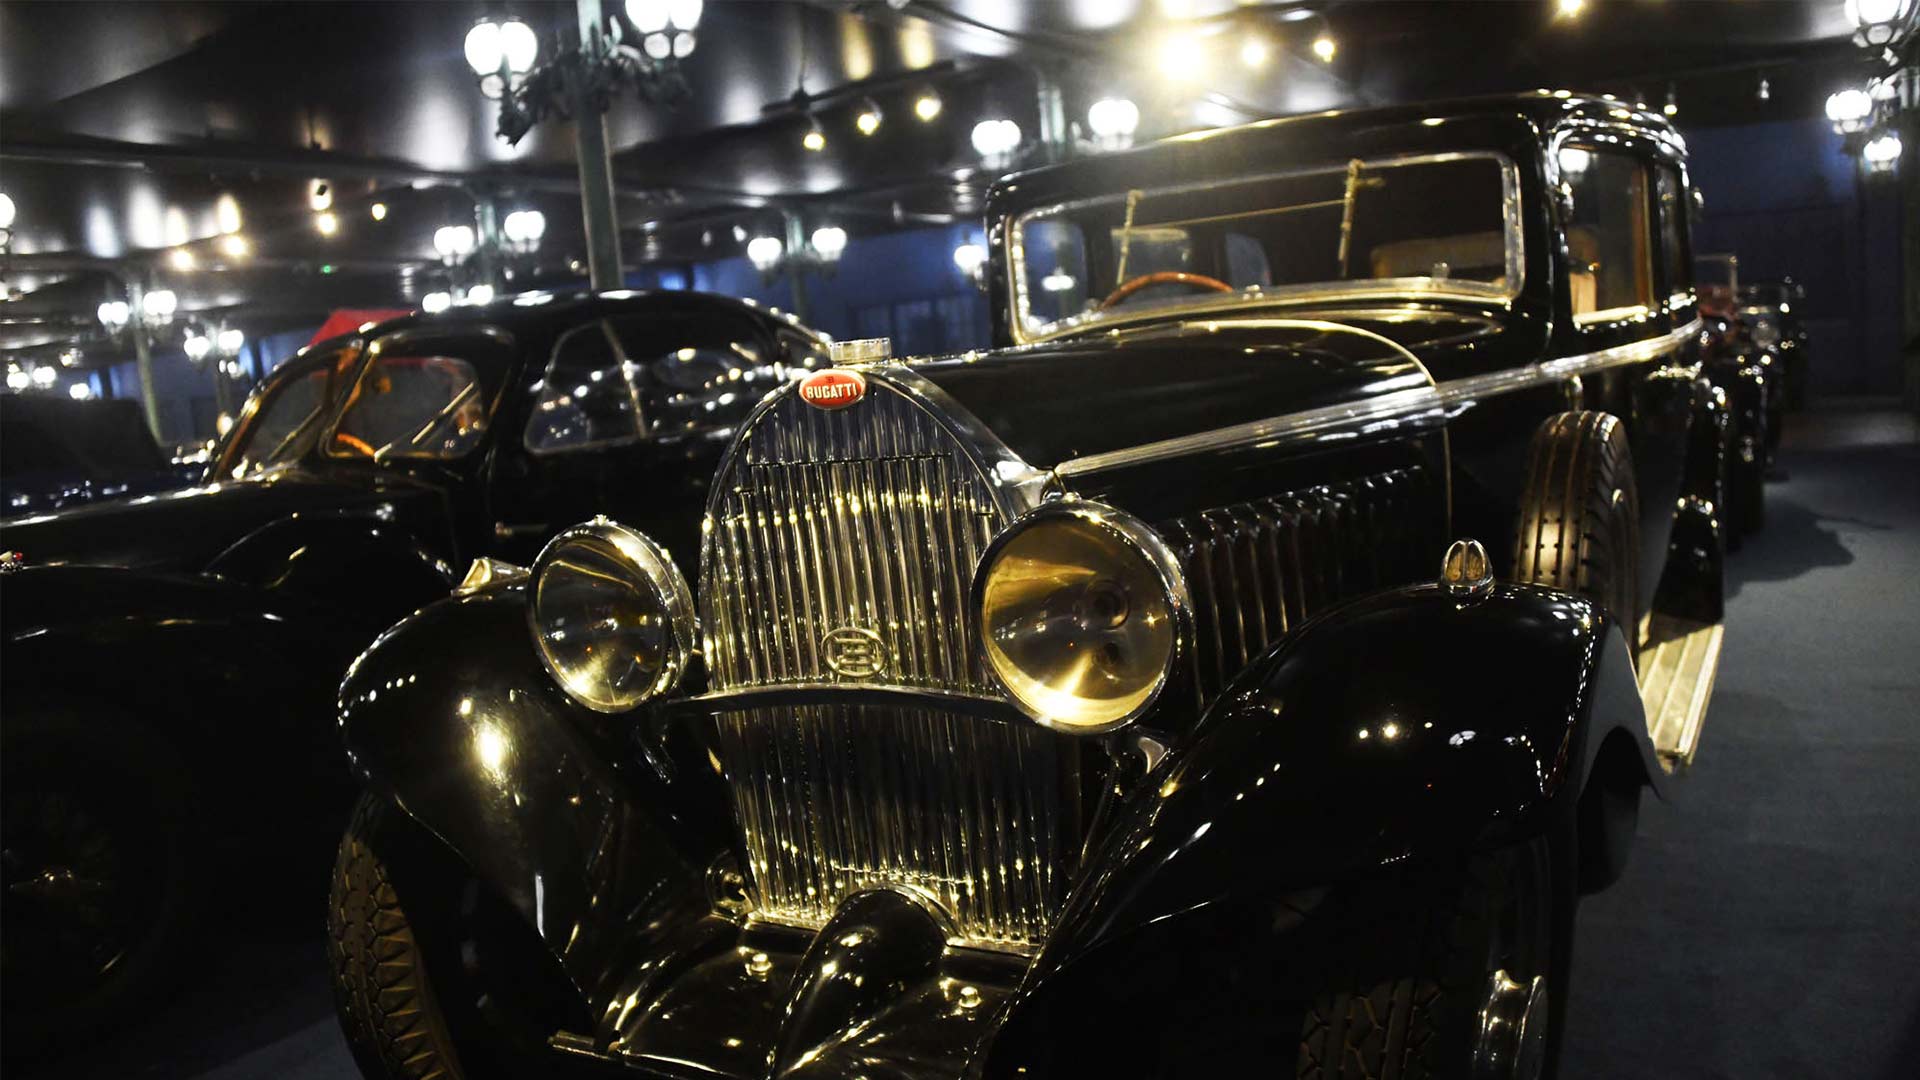 Bugatti Royale exposée au Musée National de l'Automobile - Collection Schlumpf